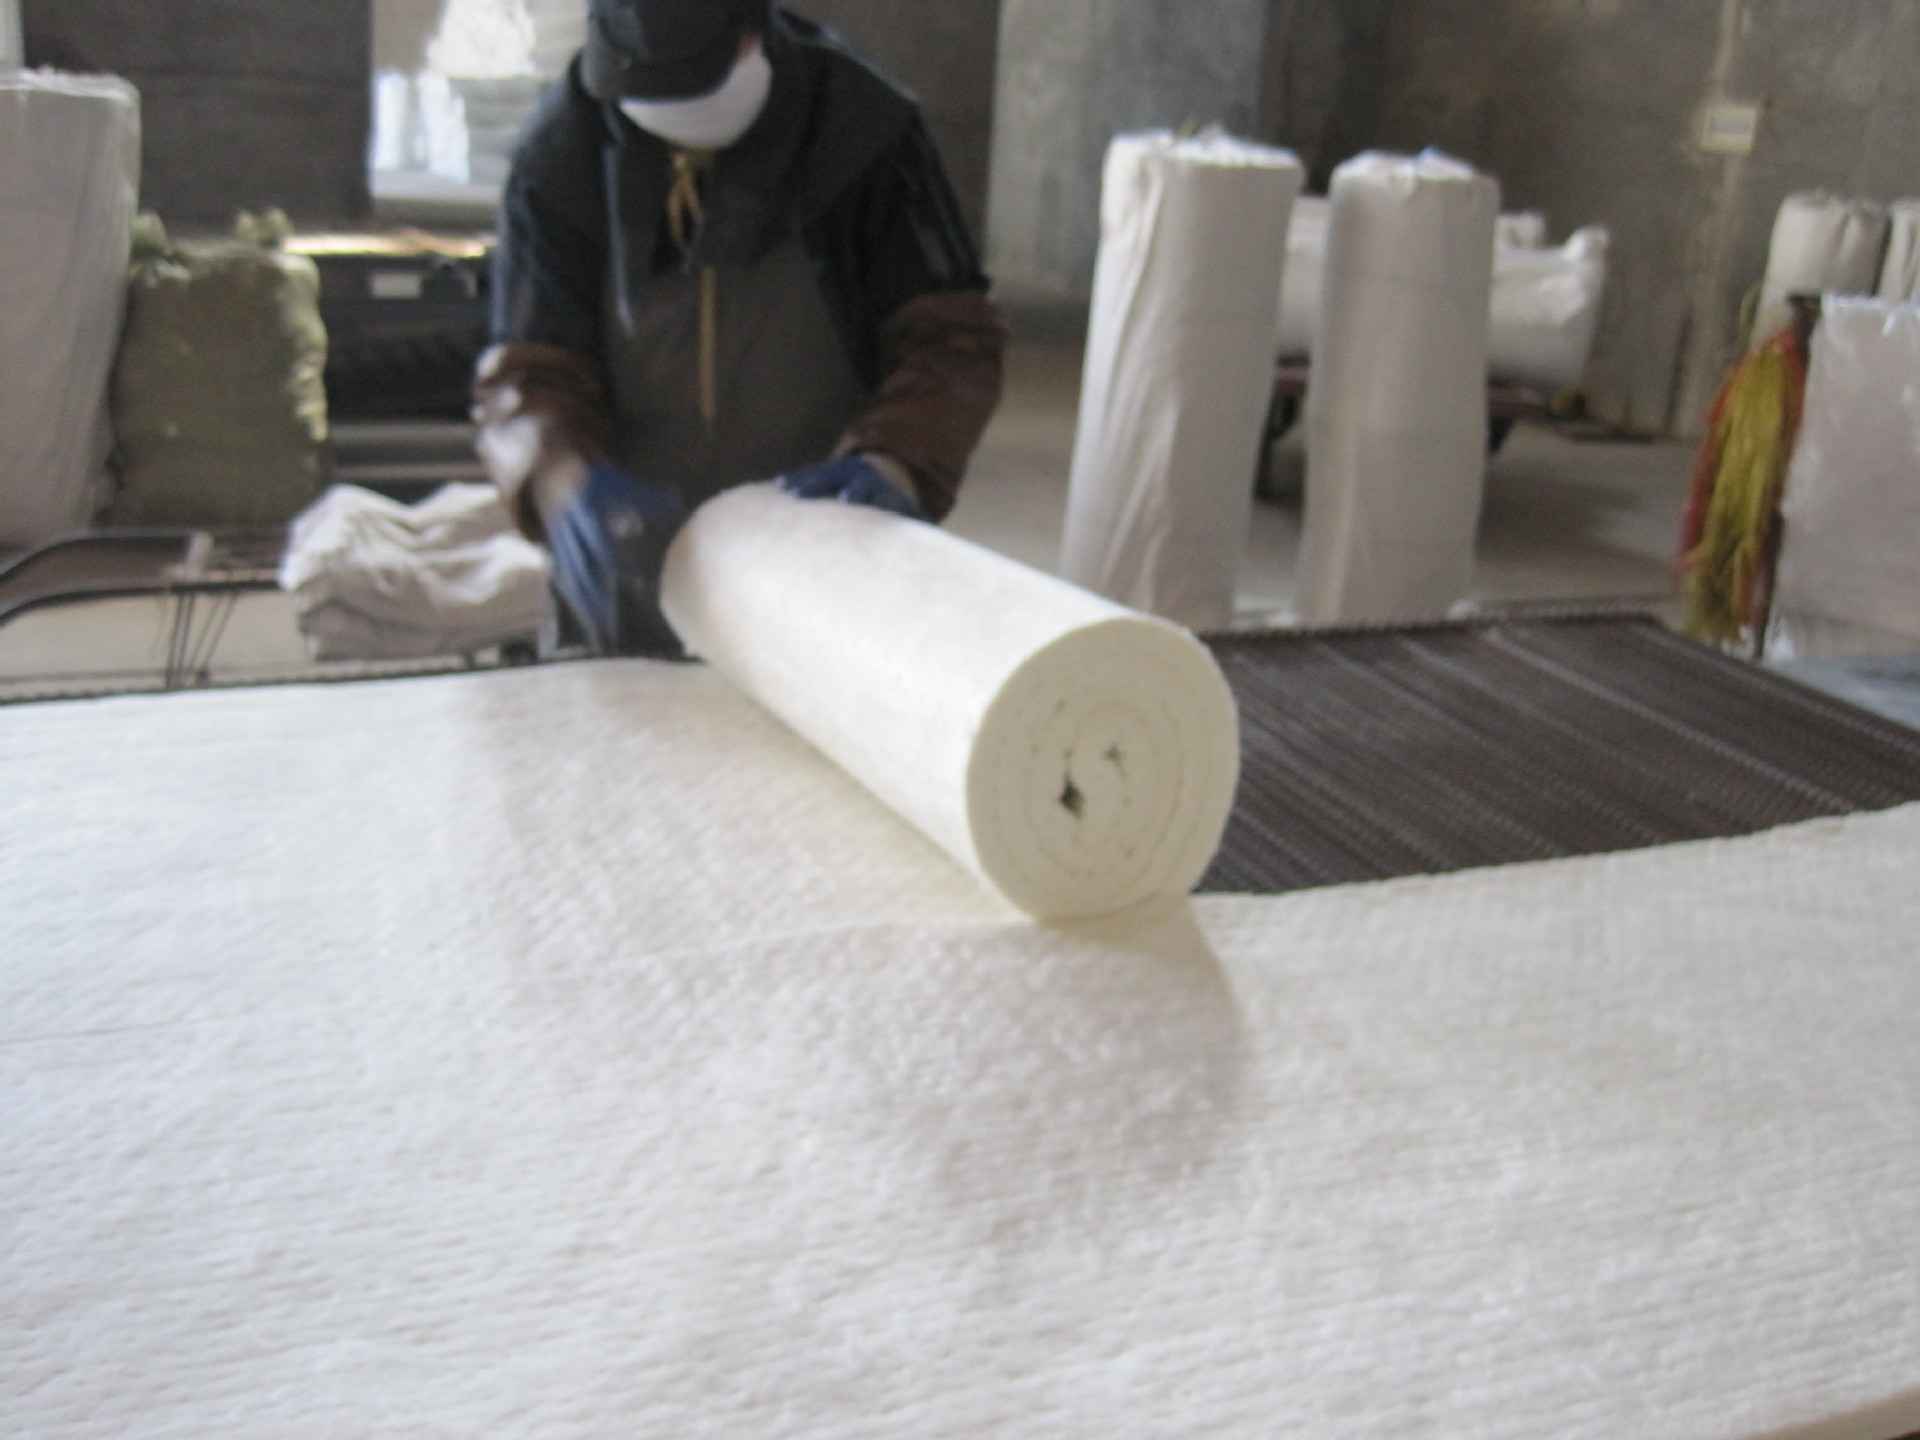 金属制品耐火棉热盾硅酸铝纤维毯陶瓷纤维毯高抗拉强度保温棉